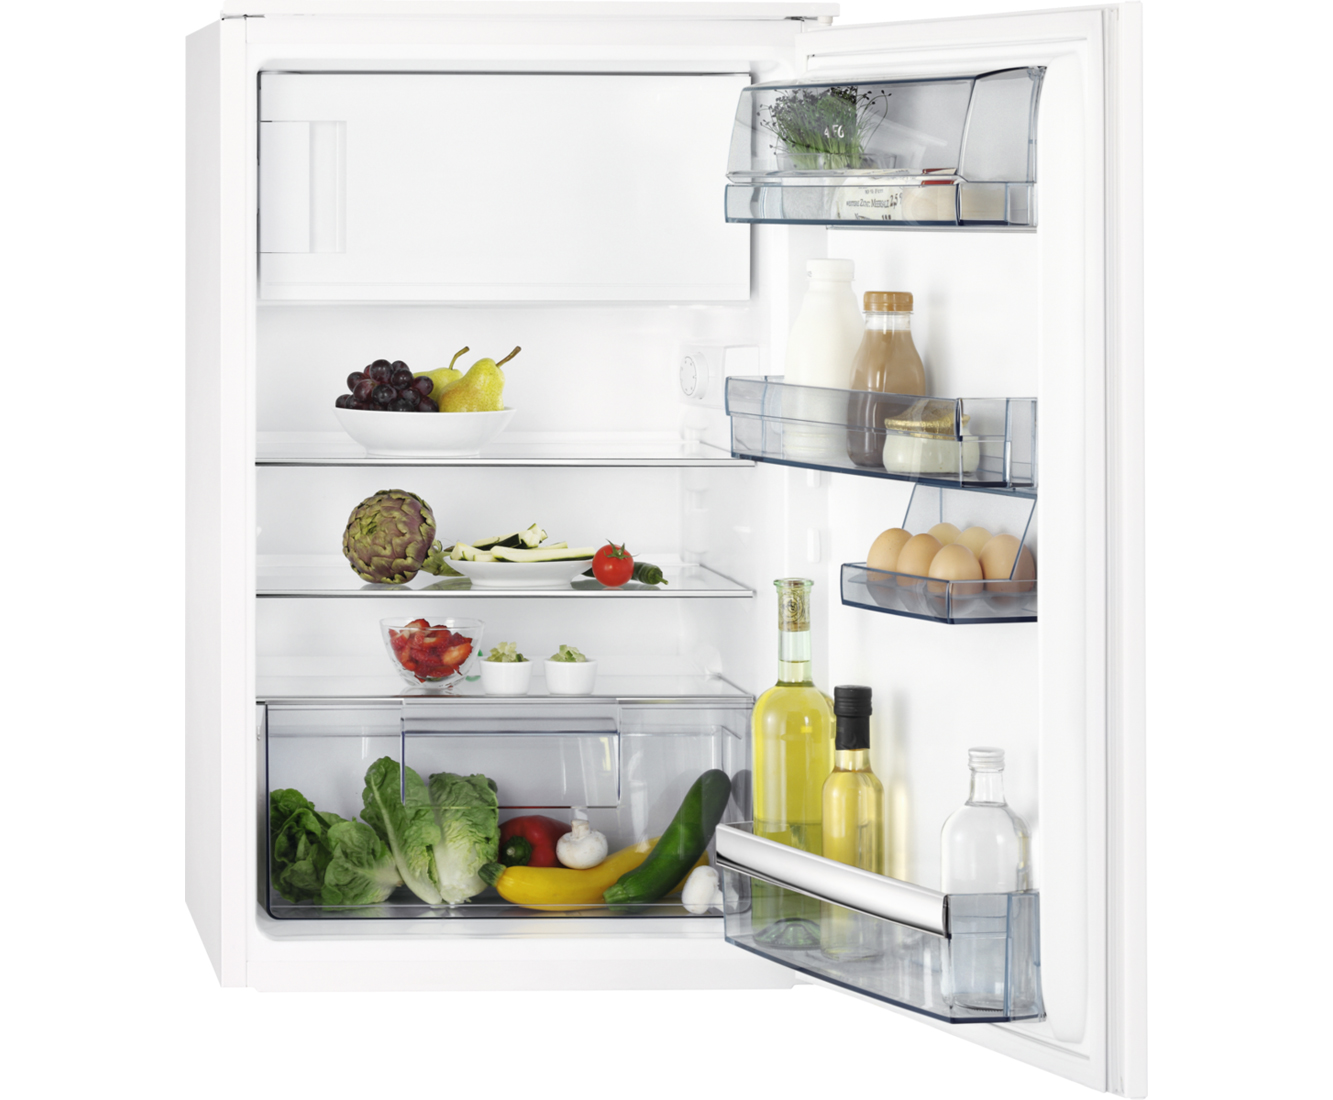 AEG koelkast (inbouw) SFB58811AS online kopen